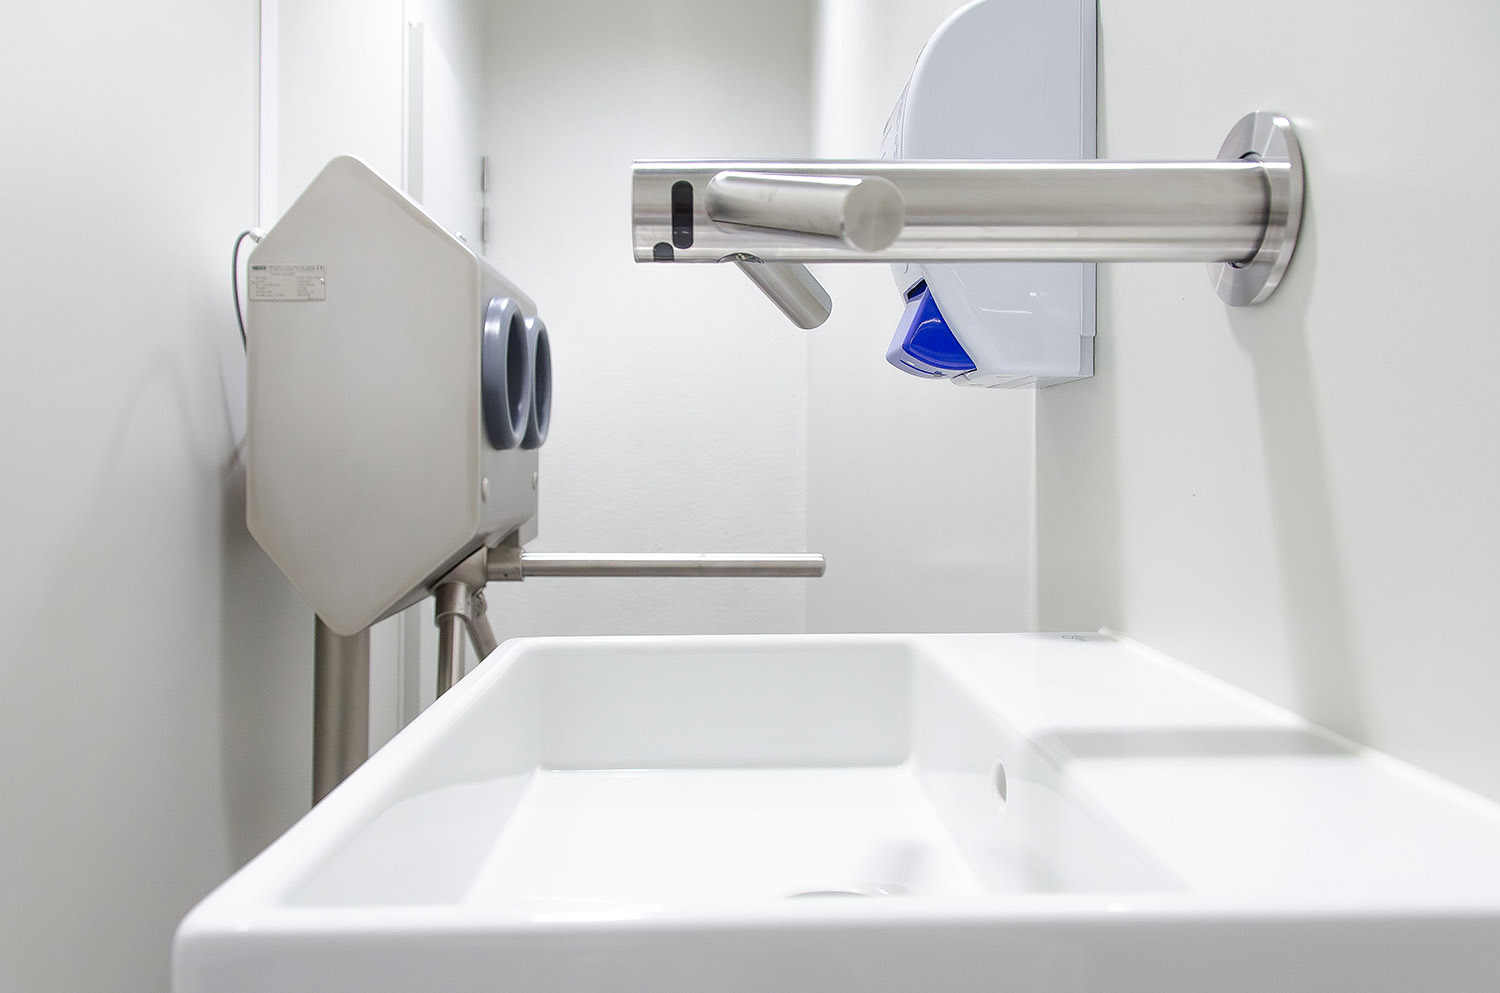 Systèmes de savon de désinfection des mains pour l'hygiène personnelle HDK dyson airblade tap BoonsFIS